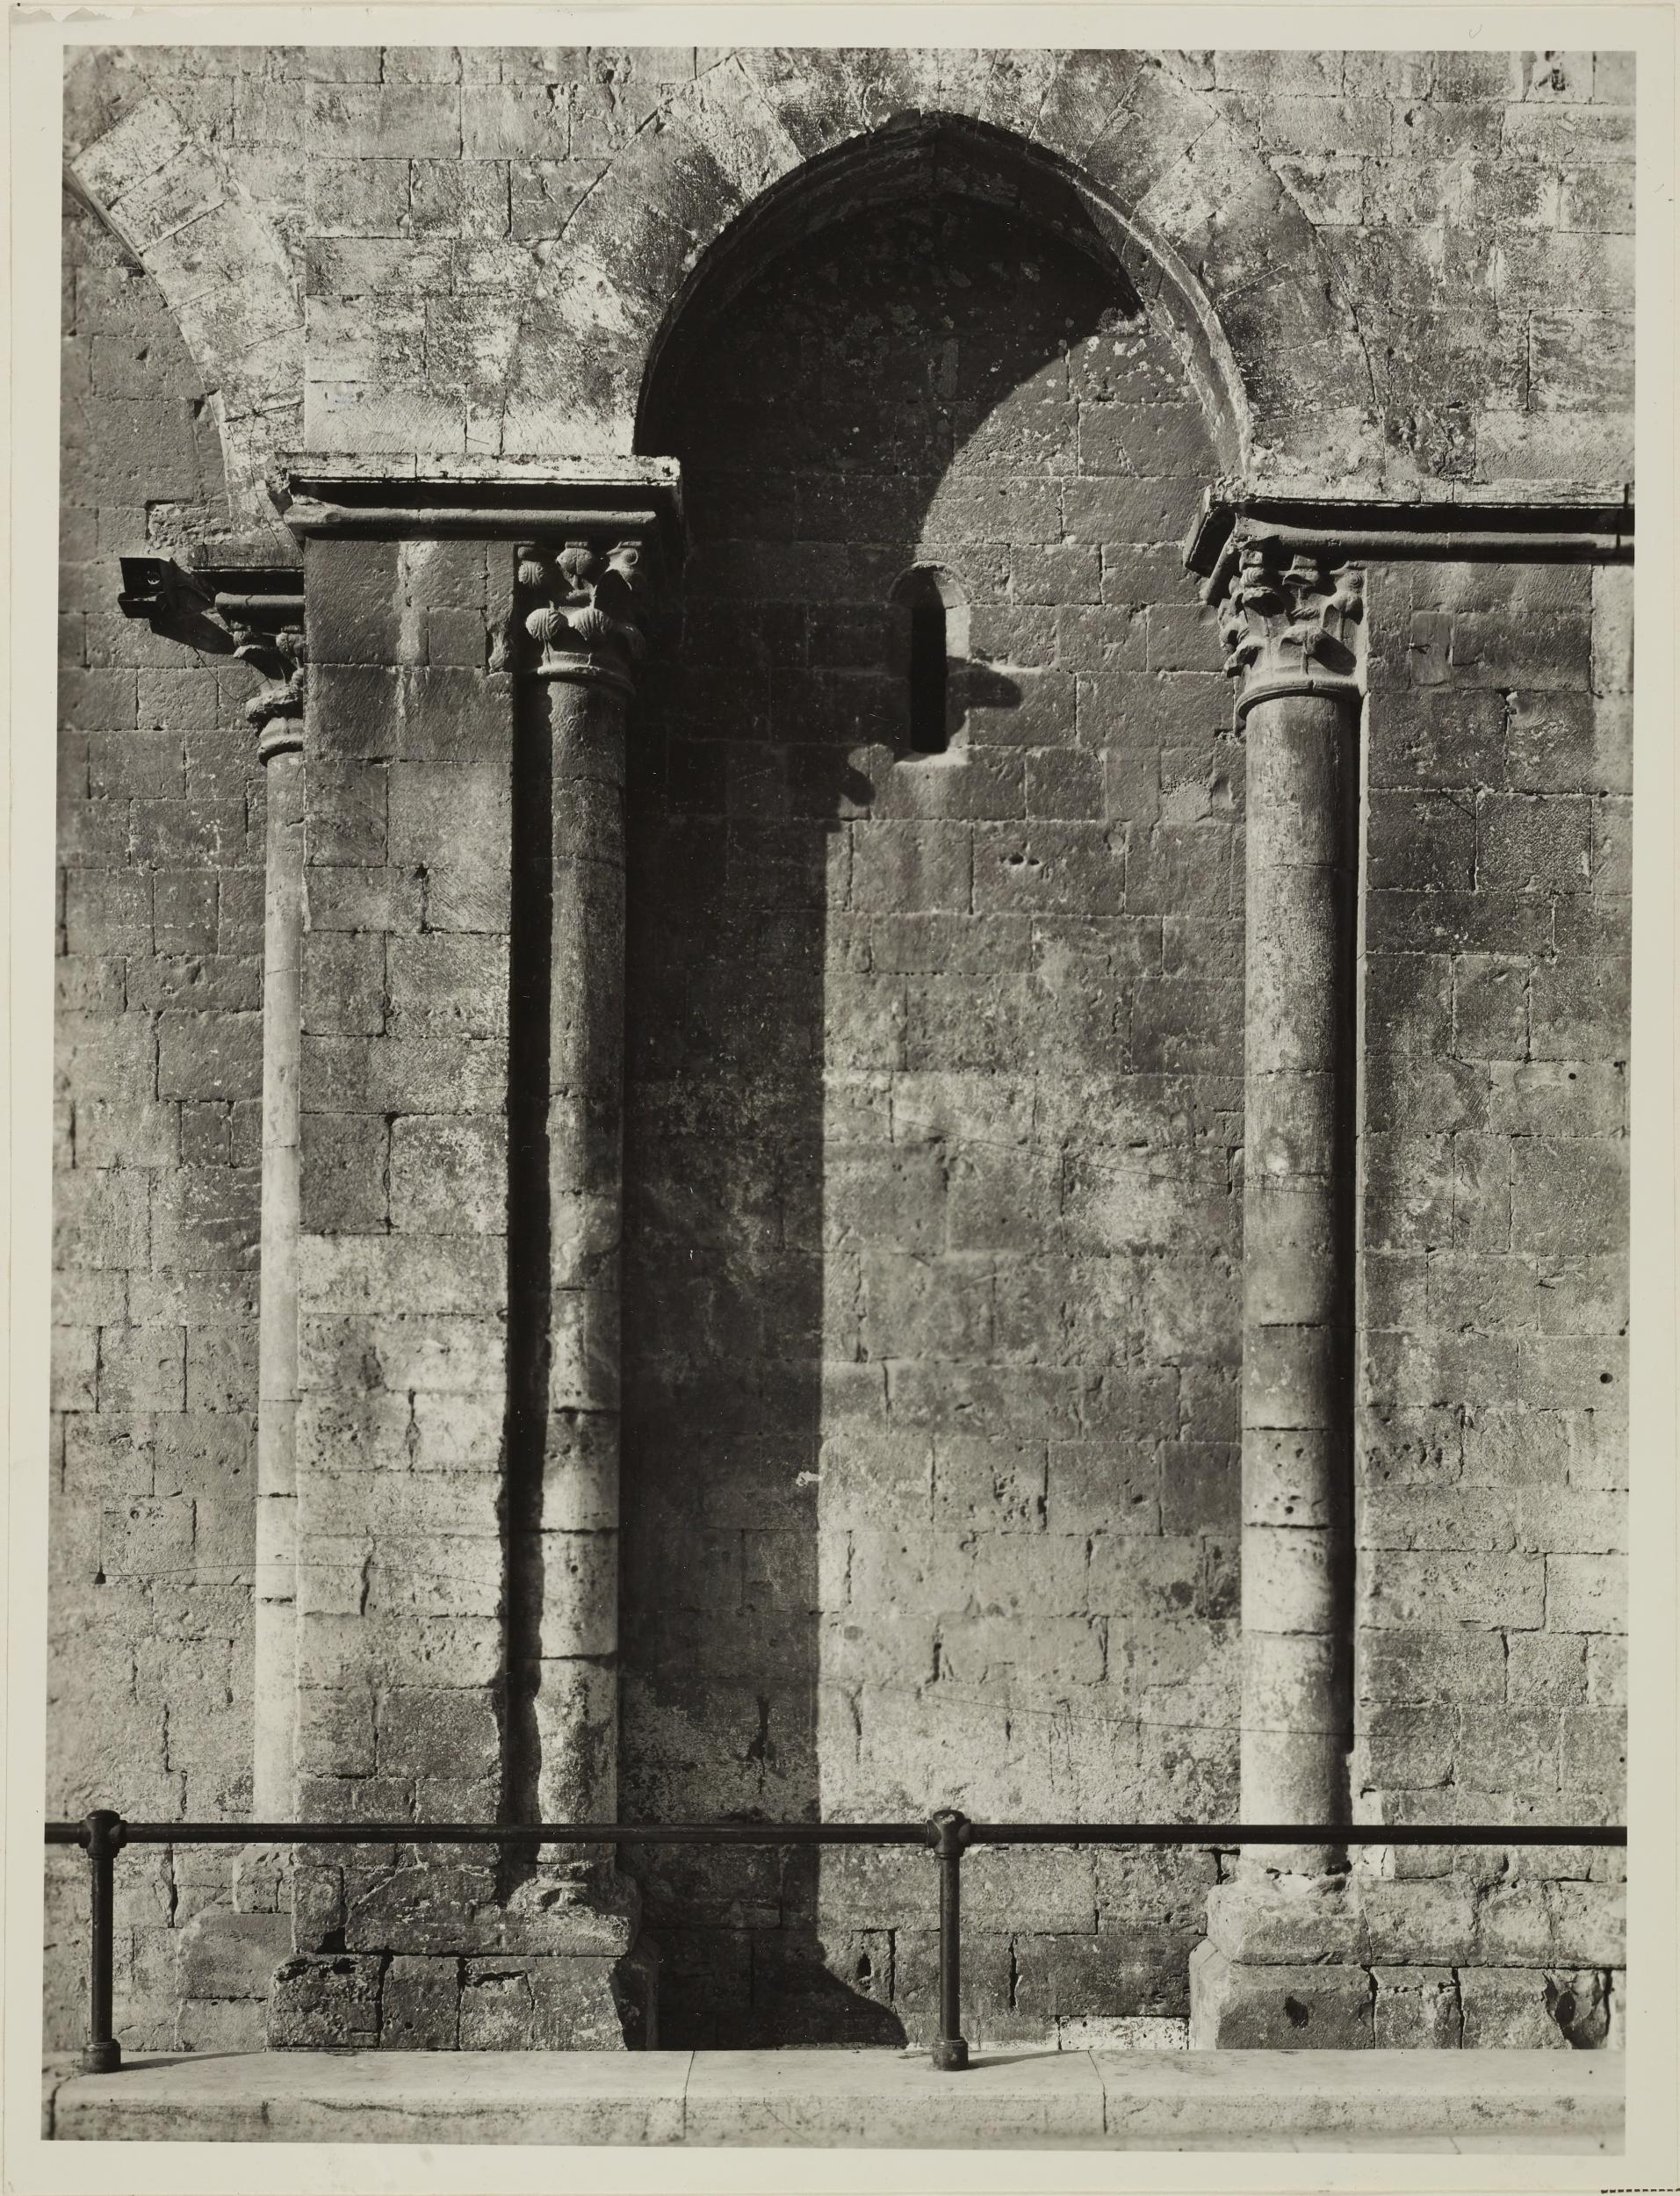 Fotografo non identificato, Barletta - Chiesa SS. Sepolcro, fianco sinistro, arcata, 1956–1957, gelatina ai sali d'argento/carta, MPI6023033